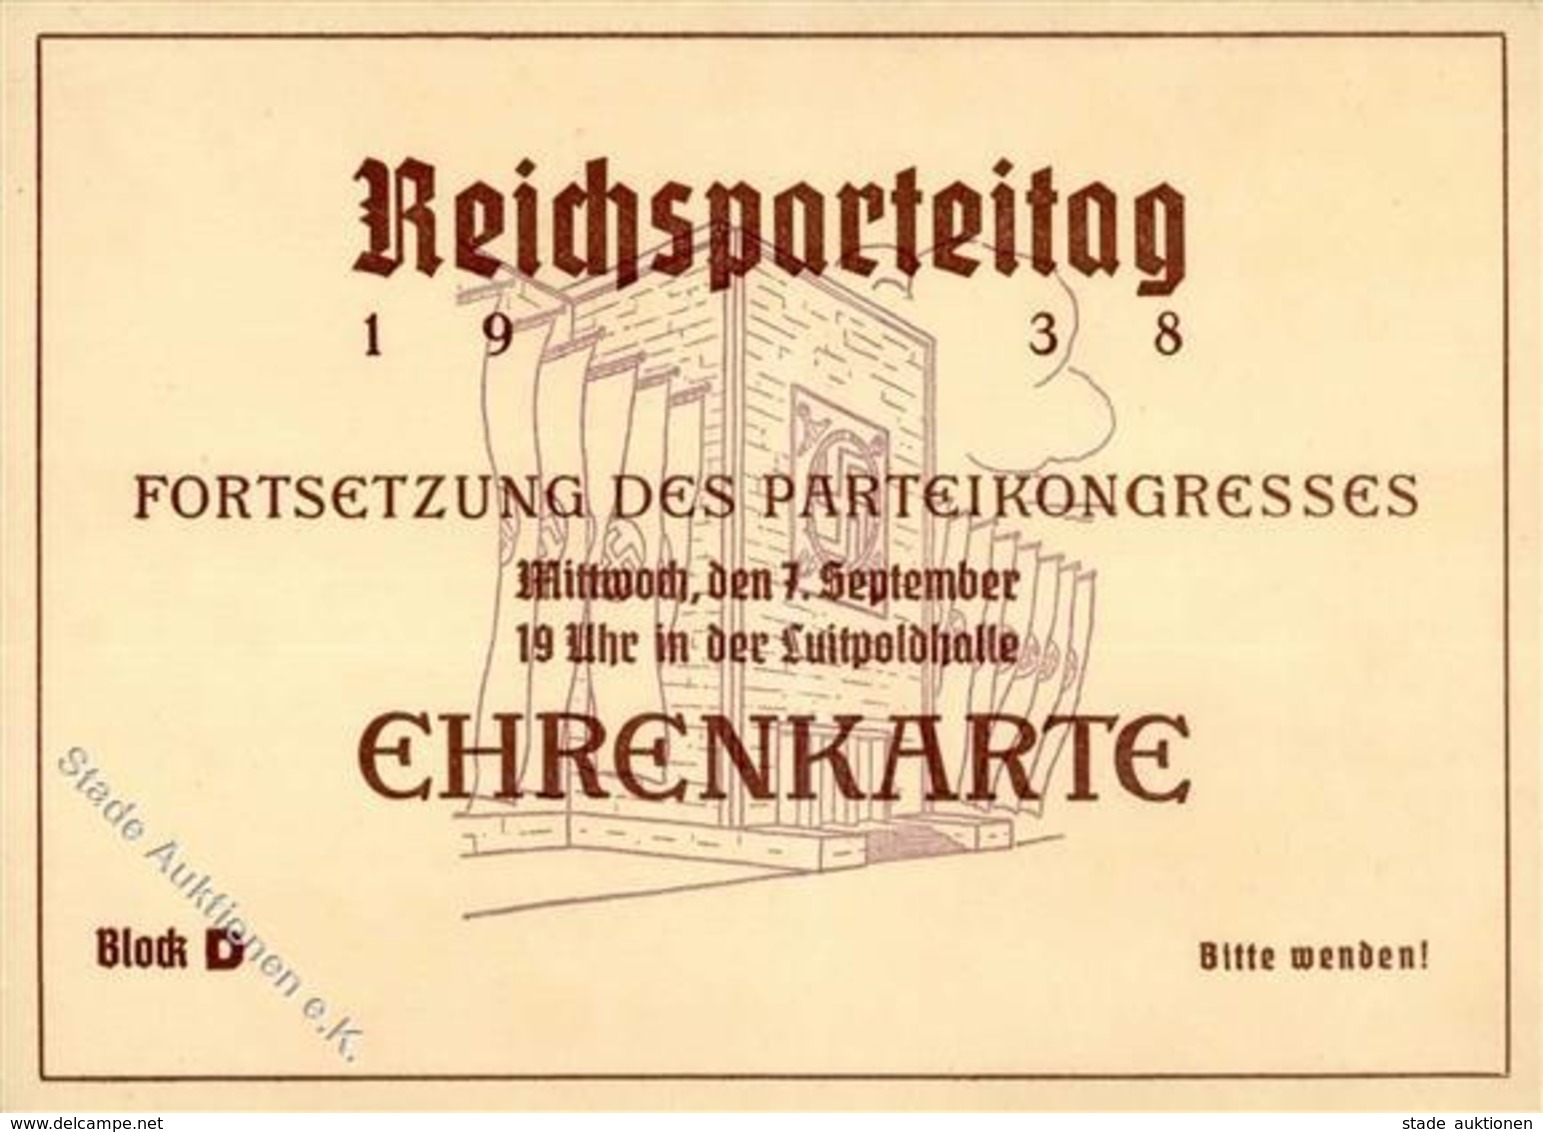 Reichsparteitag Nürnberg WKII - EHRENKARTE 7. Sept. Parteikongreß 1938 -senkr. Gefaltet- - Weltkrieg 1939-45